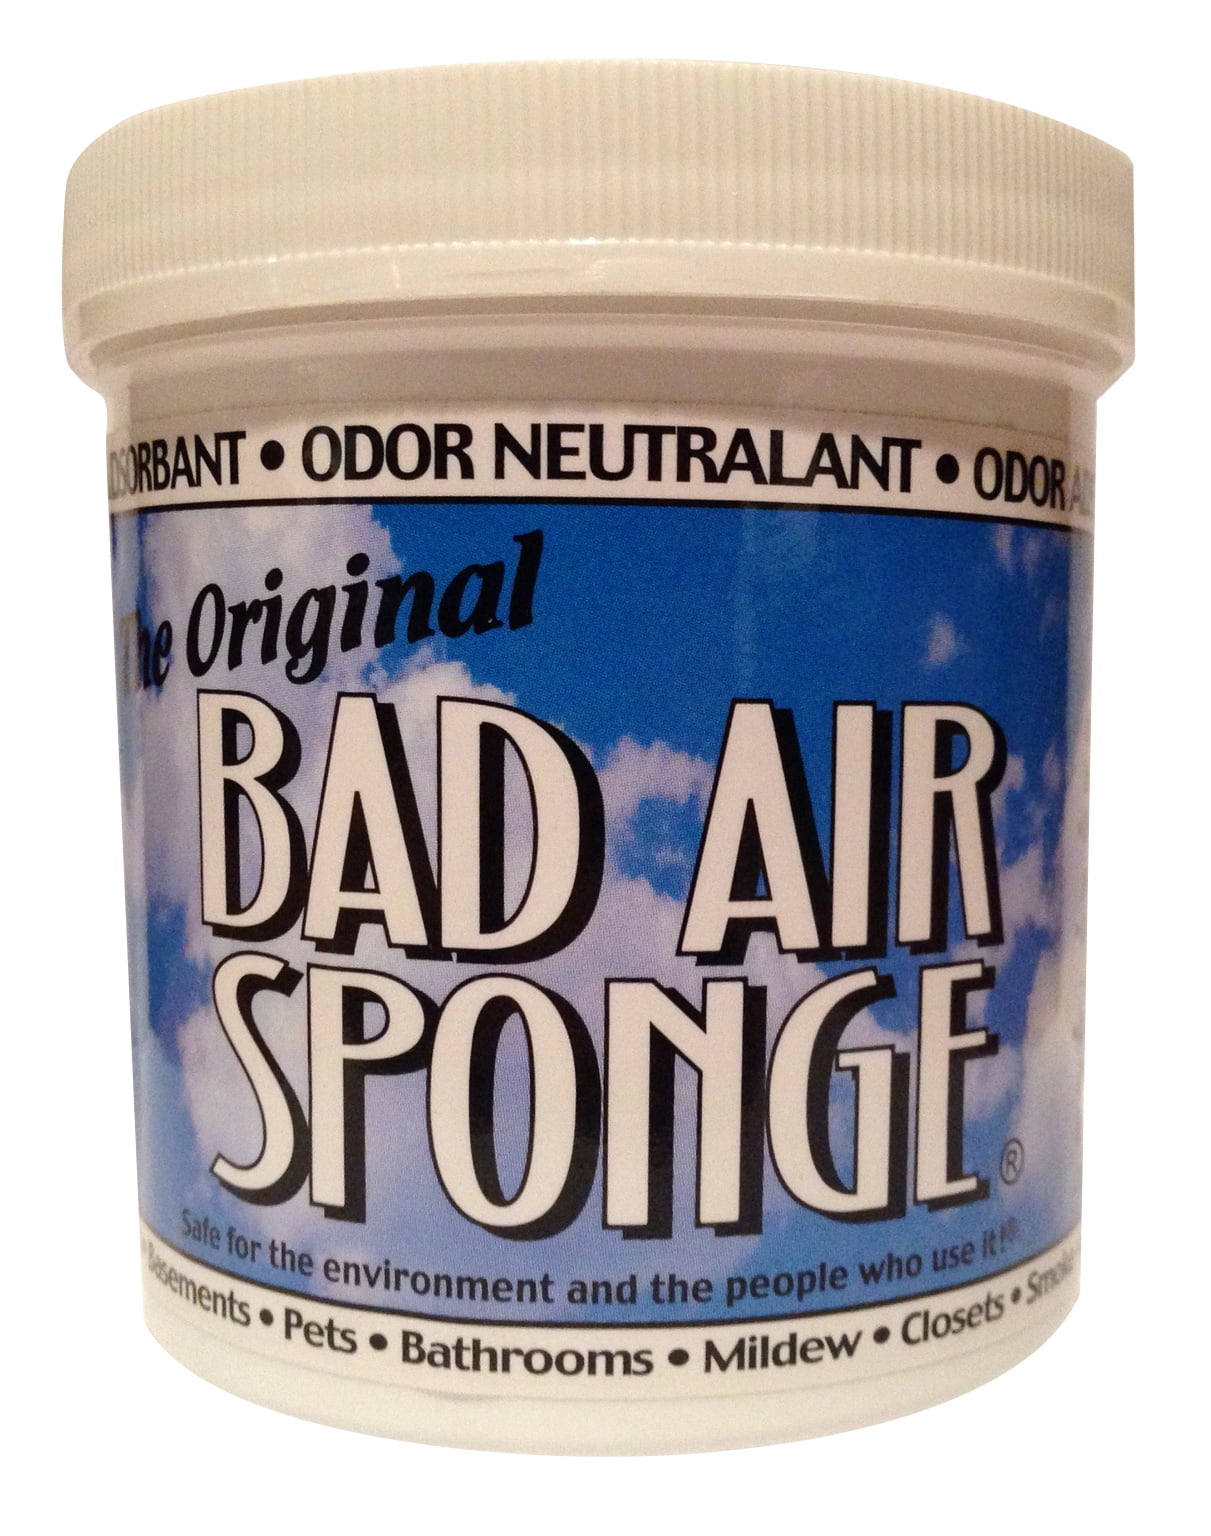 Bad Air The Original All-Purpose Sponge, 30 oz, 1 - Kroger